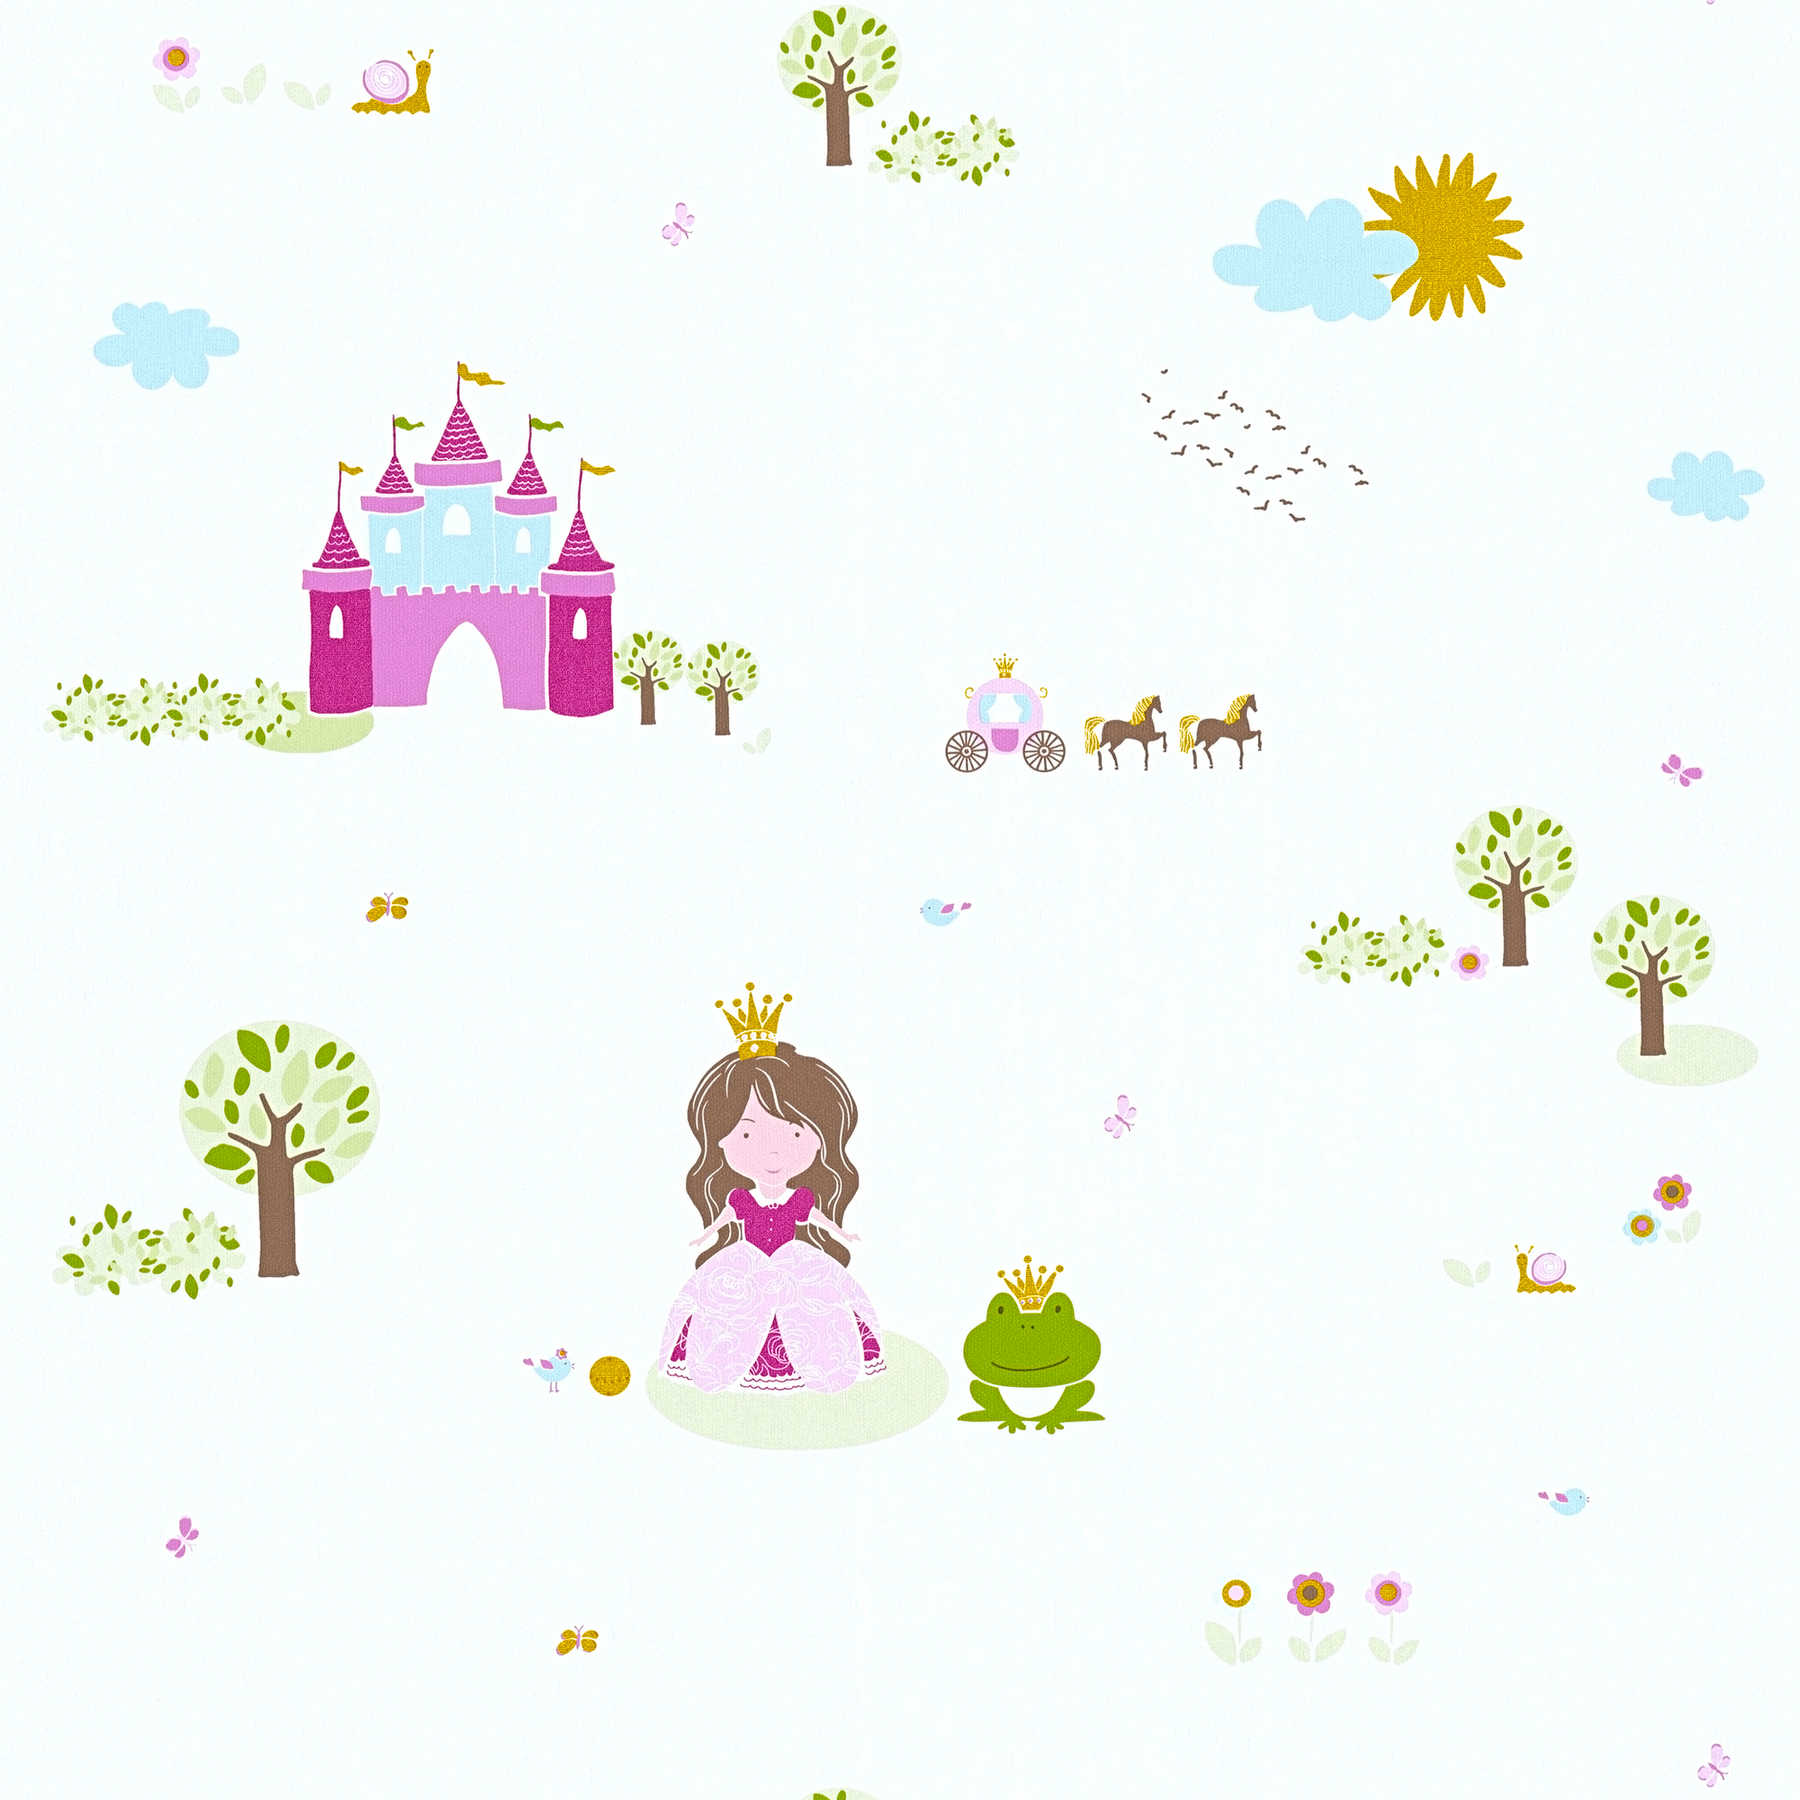         Children fantasy wallpaper for boys & girls - Colorful
    